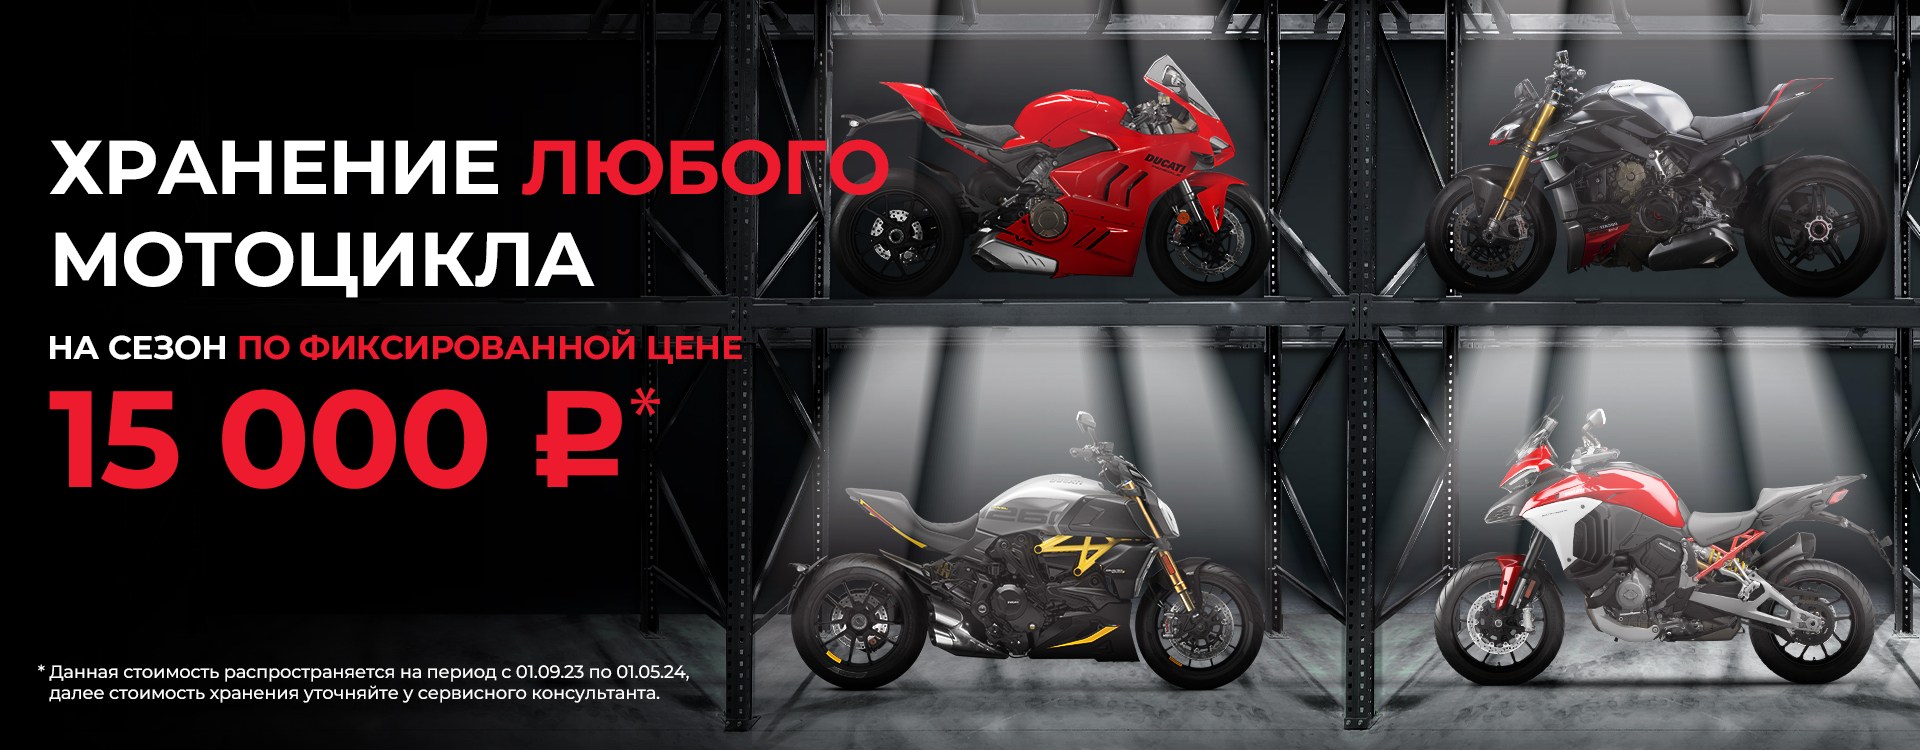 Хранение любого мотоцикла на сезон по фиксированной цене 15000 руб.